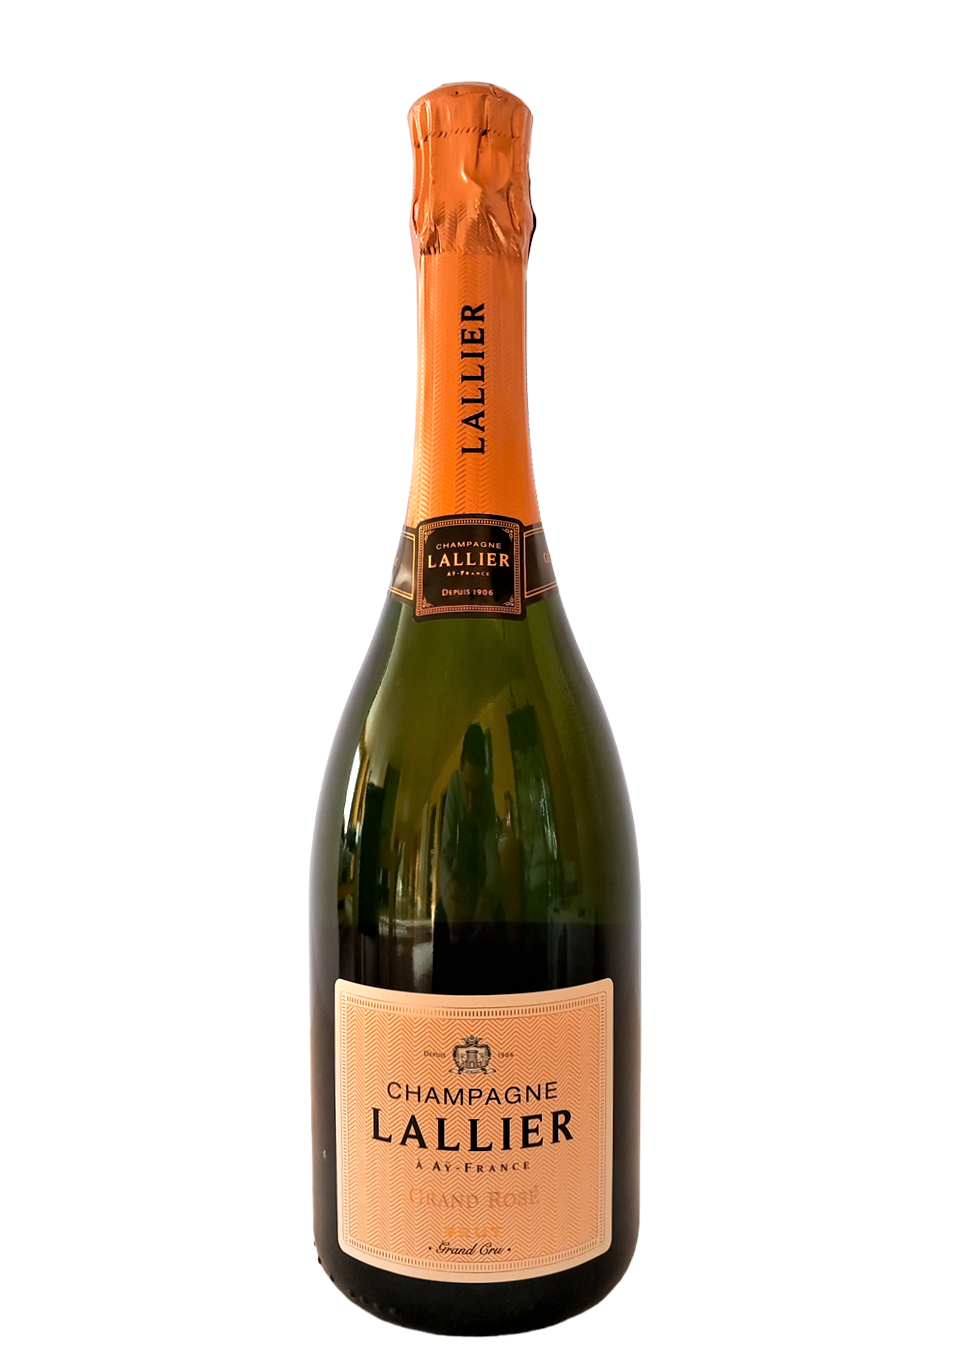 Champagne Lallier Grand Rosé Grand cru 12.5% 75cl + etui